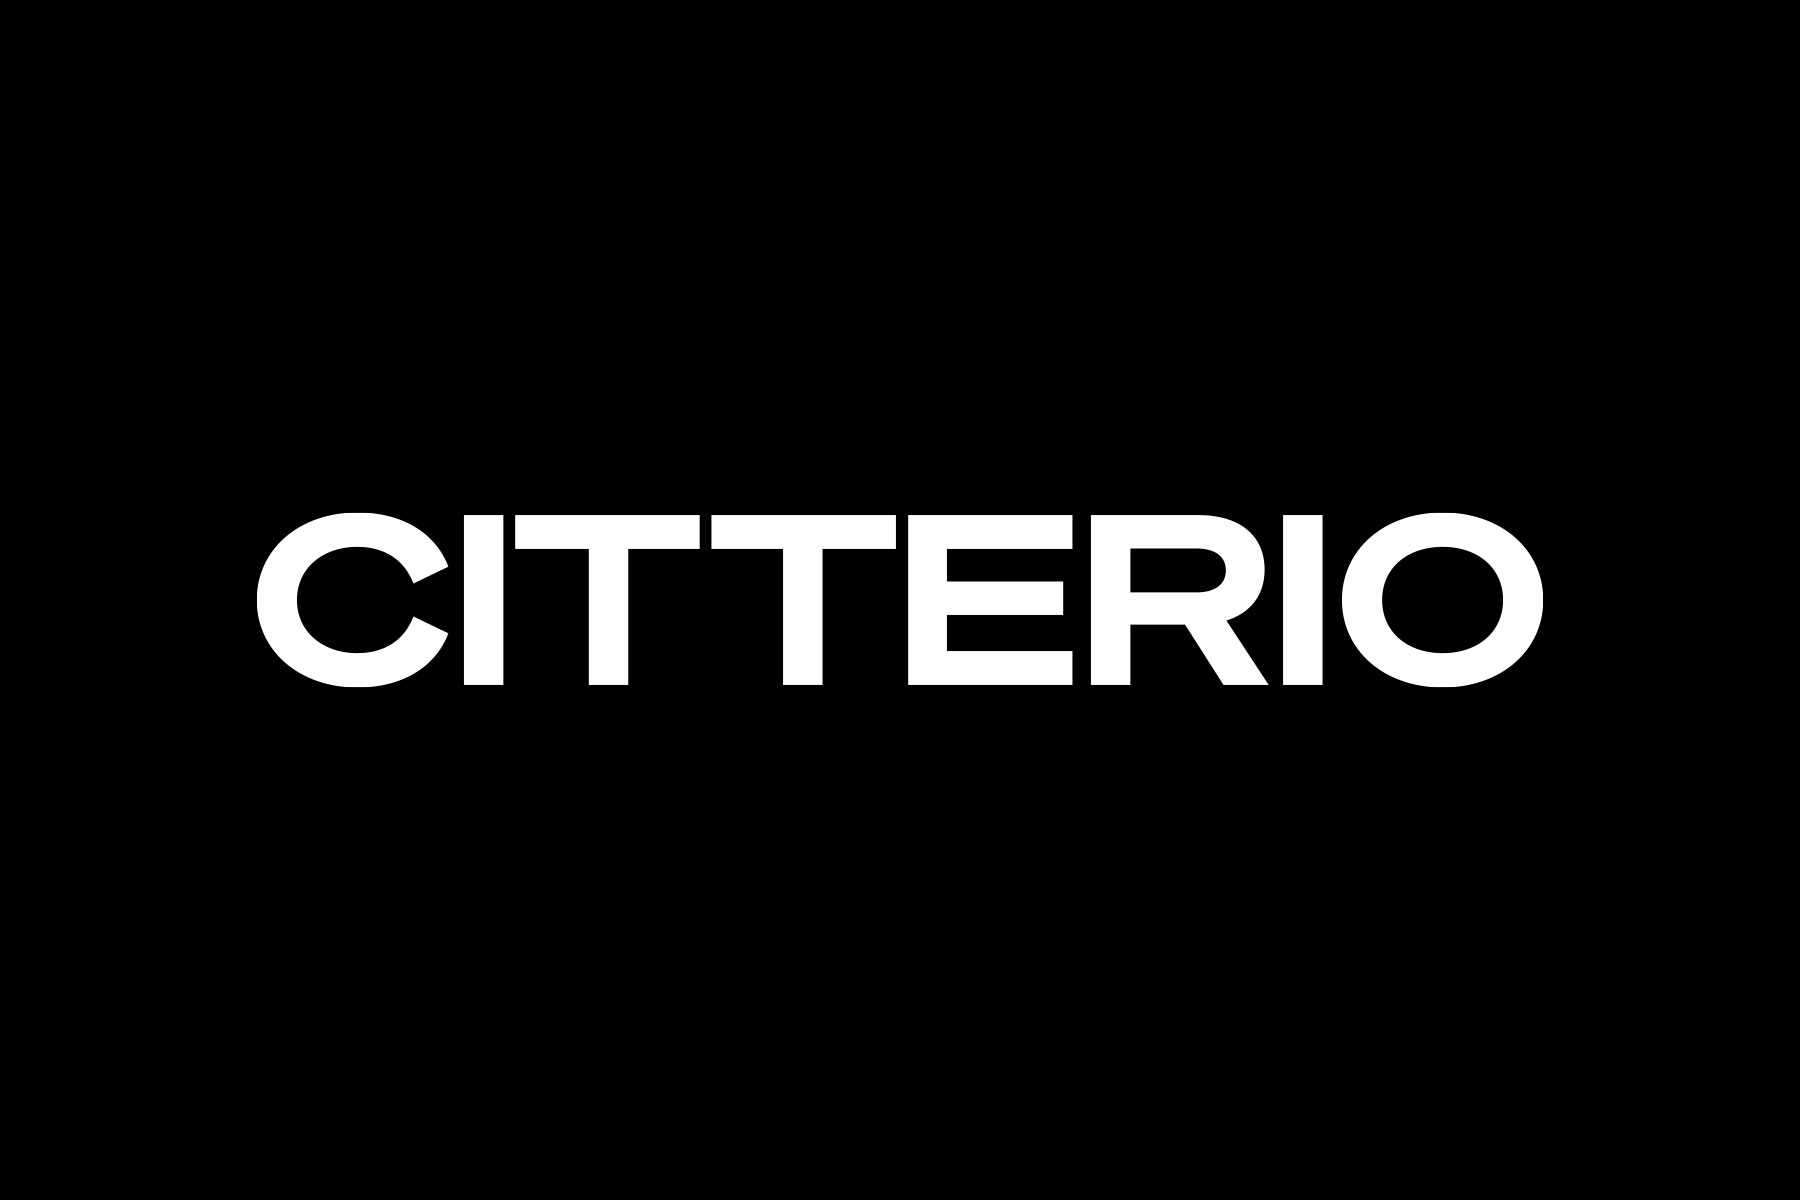 citterio logotype